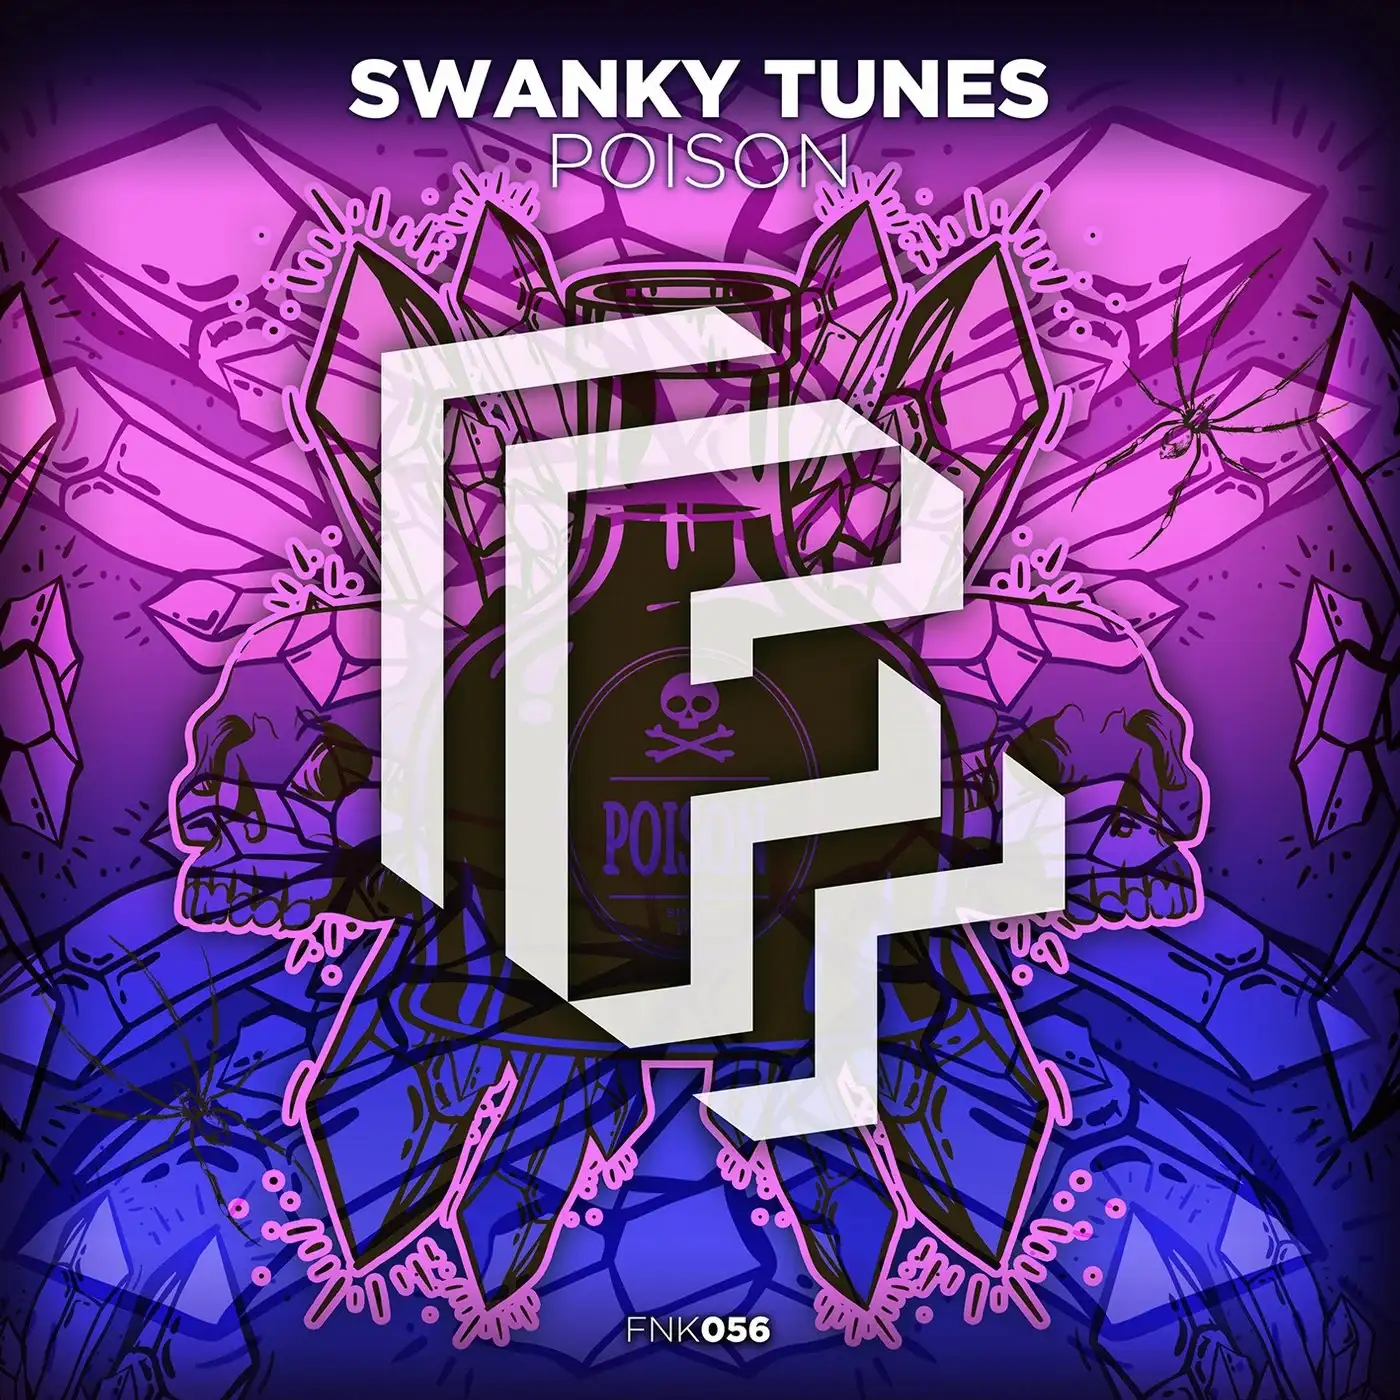 Swanky Tunes 